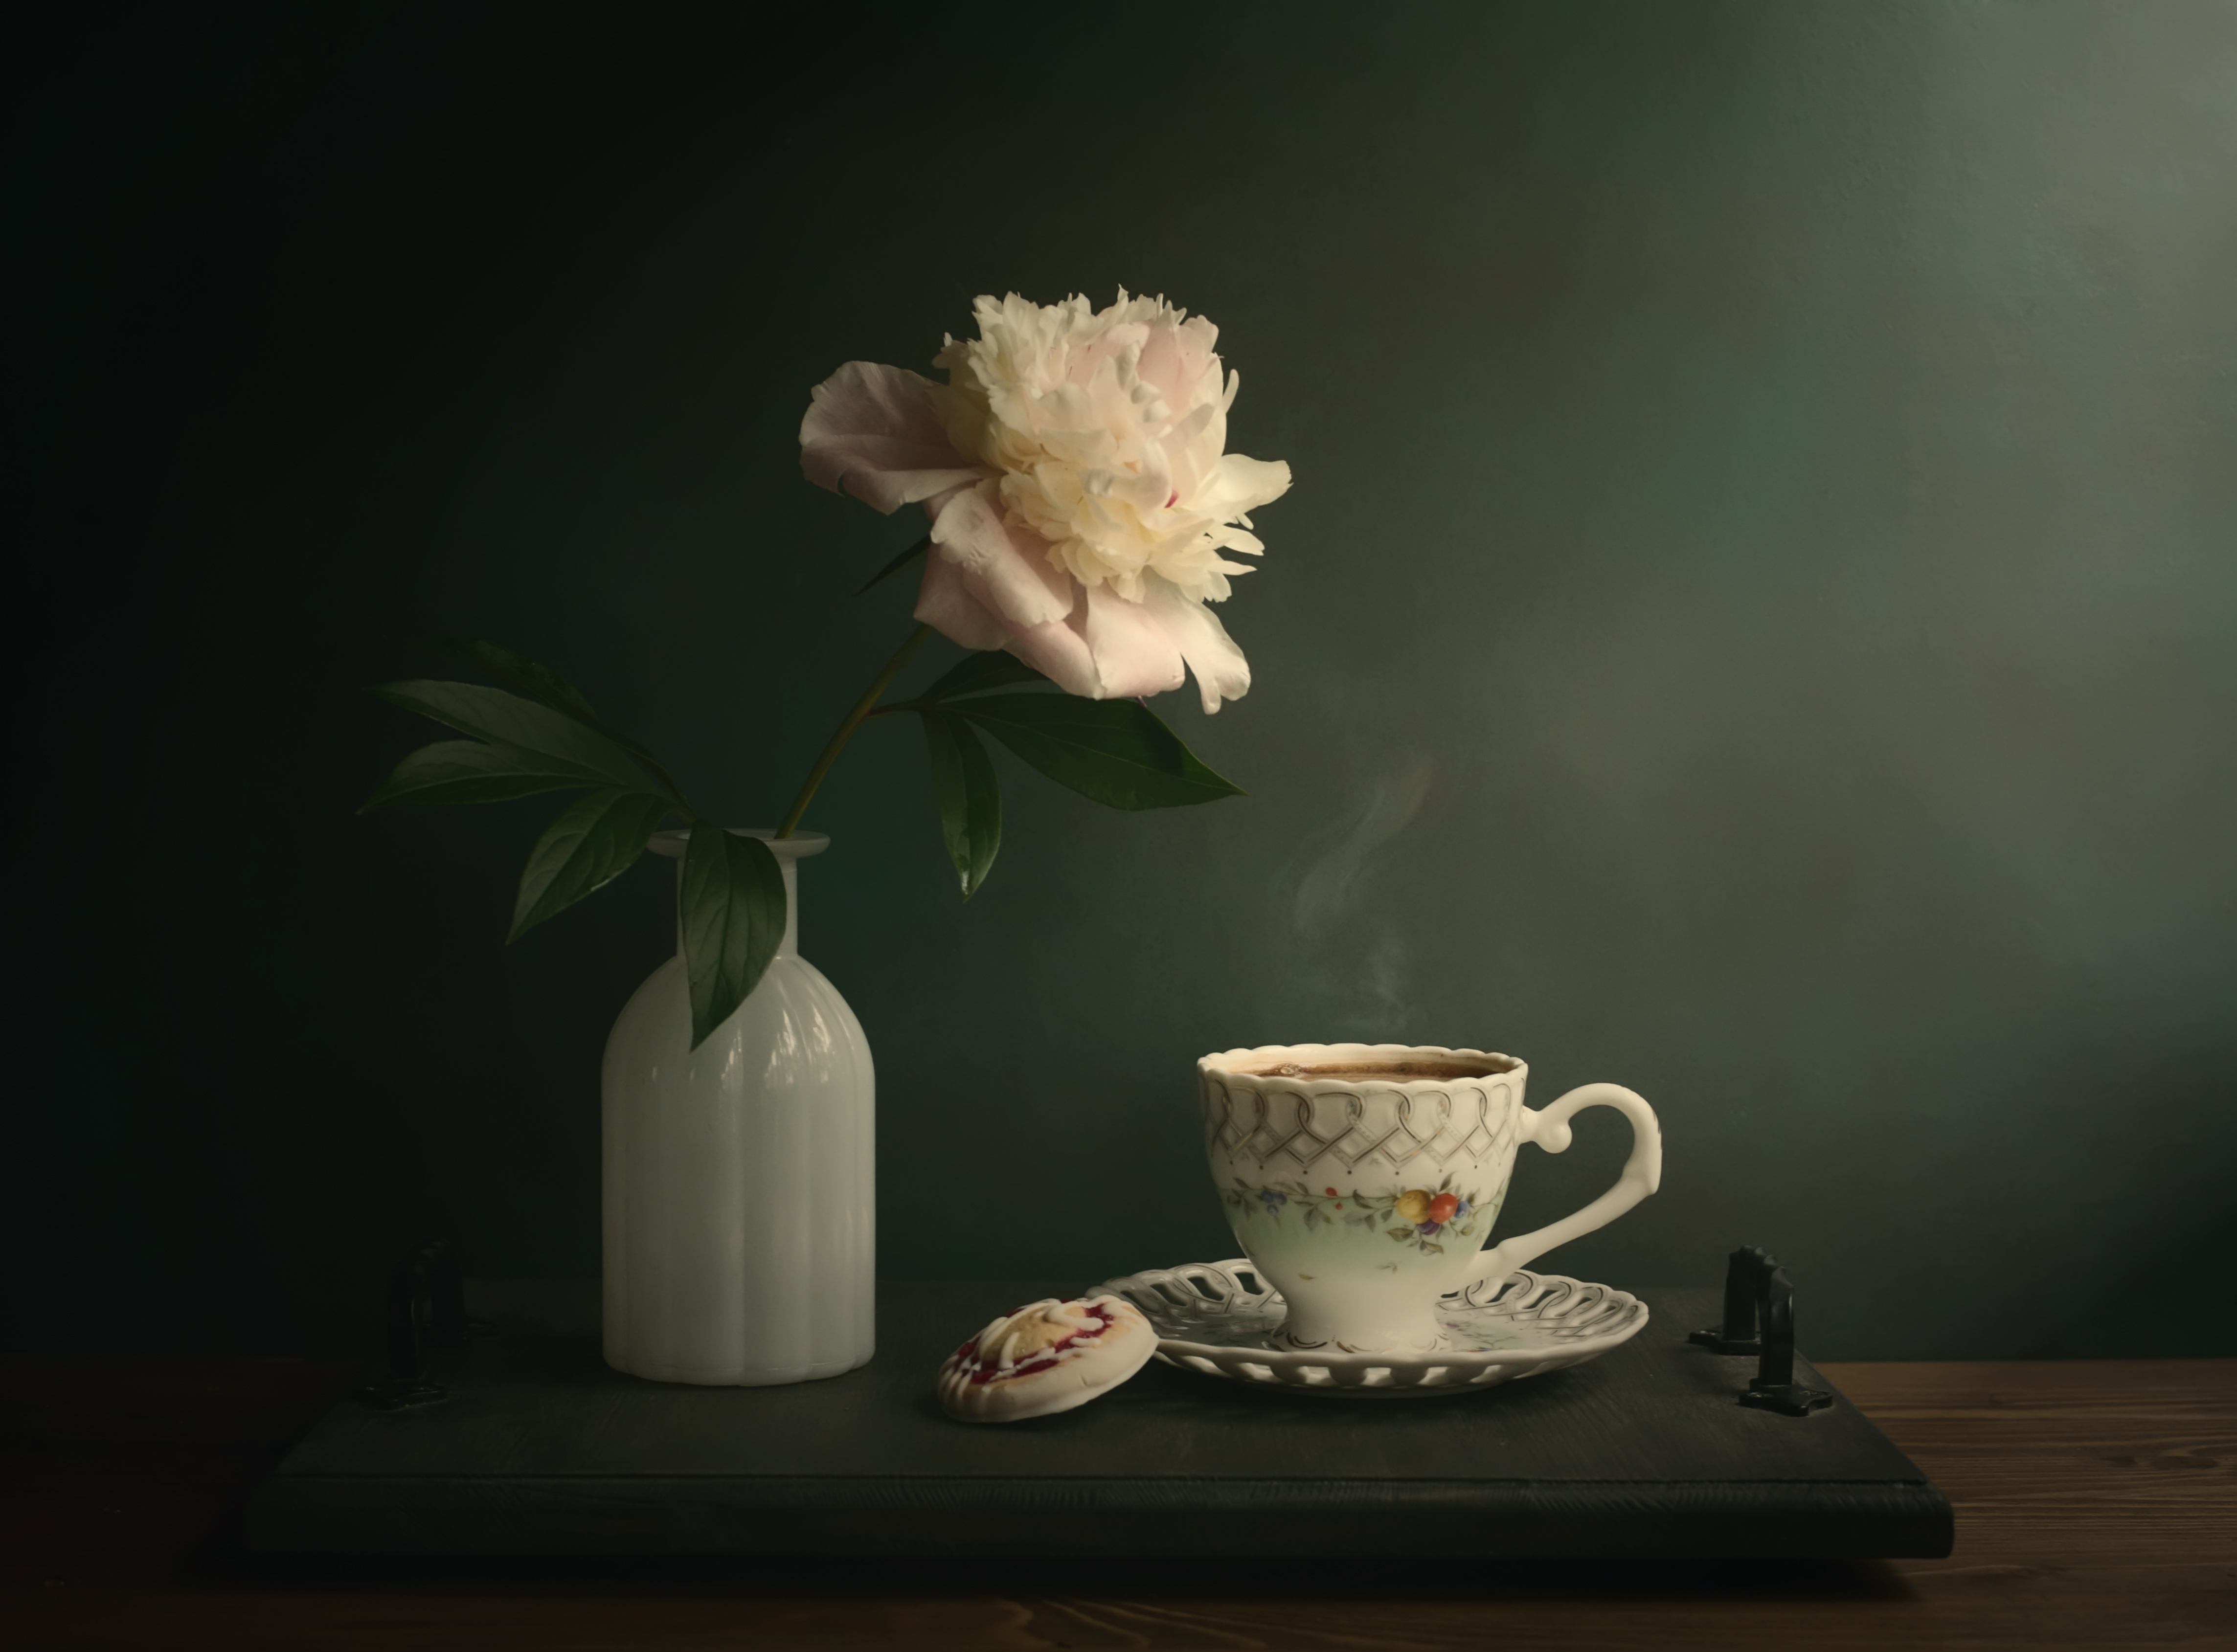 кофе с молоком, печенье, пион, цветы на столе, цветок, белый пион, Стасов Виталий